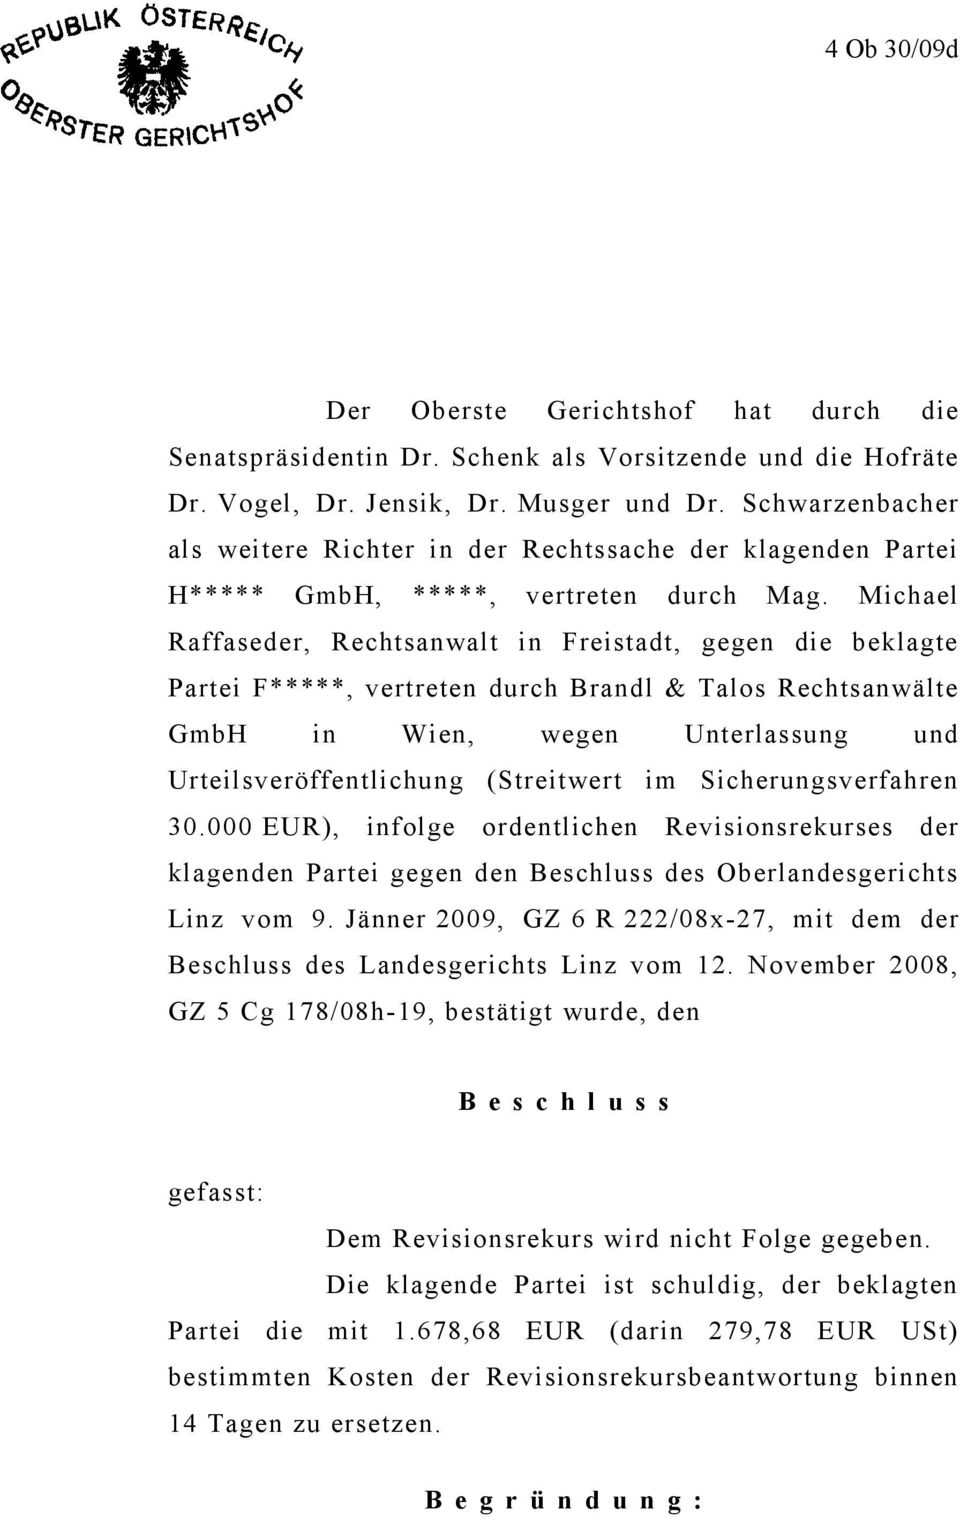 Michael Raffaseder, Rechtsanwalt in Freistadt, gegen die beklagte Partei F*****, vertreten durch Brandl & Talos Rechtsanwälte GmbH in Wien, wegen Unterlassung und Urteilsveröffentlichung (Streitwert